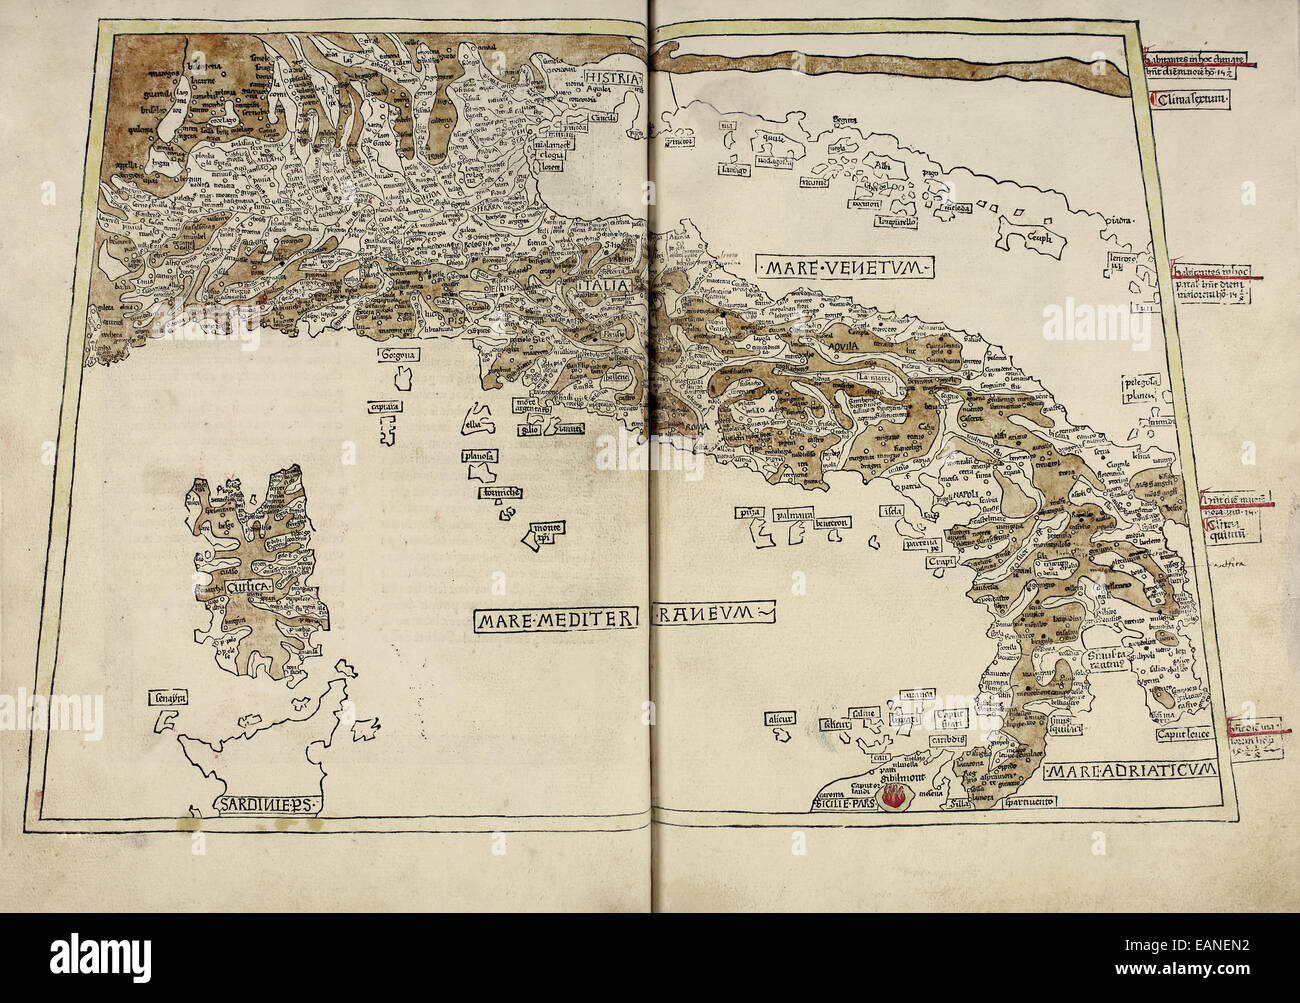 Karte von Italien & Korsika von "Cosmographia" von Claudius Ptolemäus (Ptolemaeus) (90-168AD). Siehe Beschreibung für mehr Informationen. Stockfoto